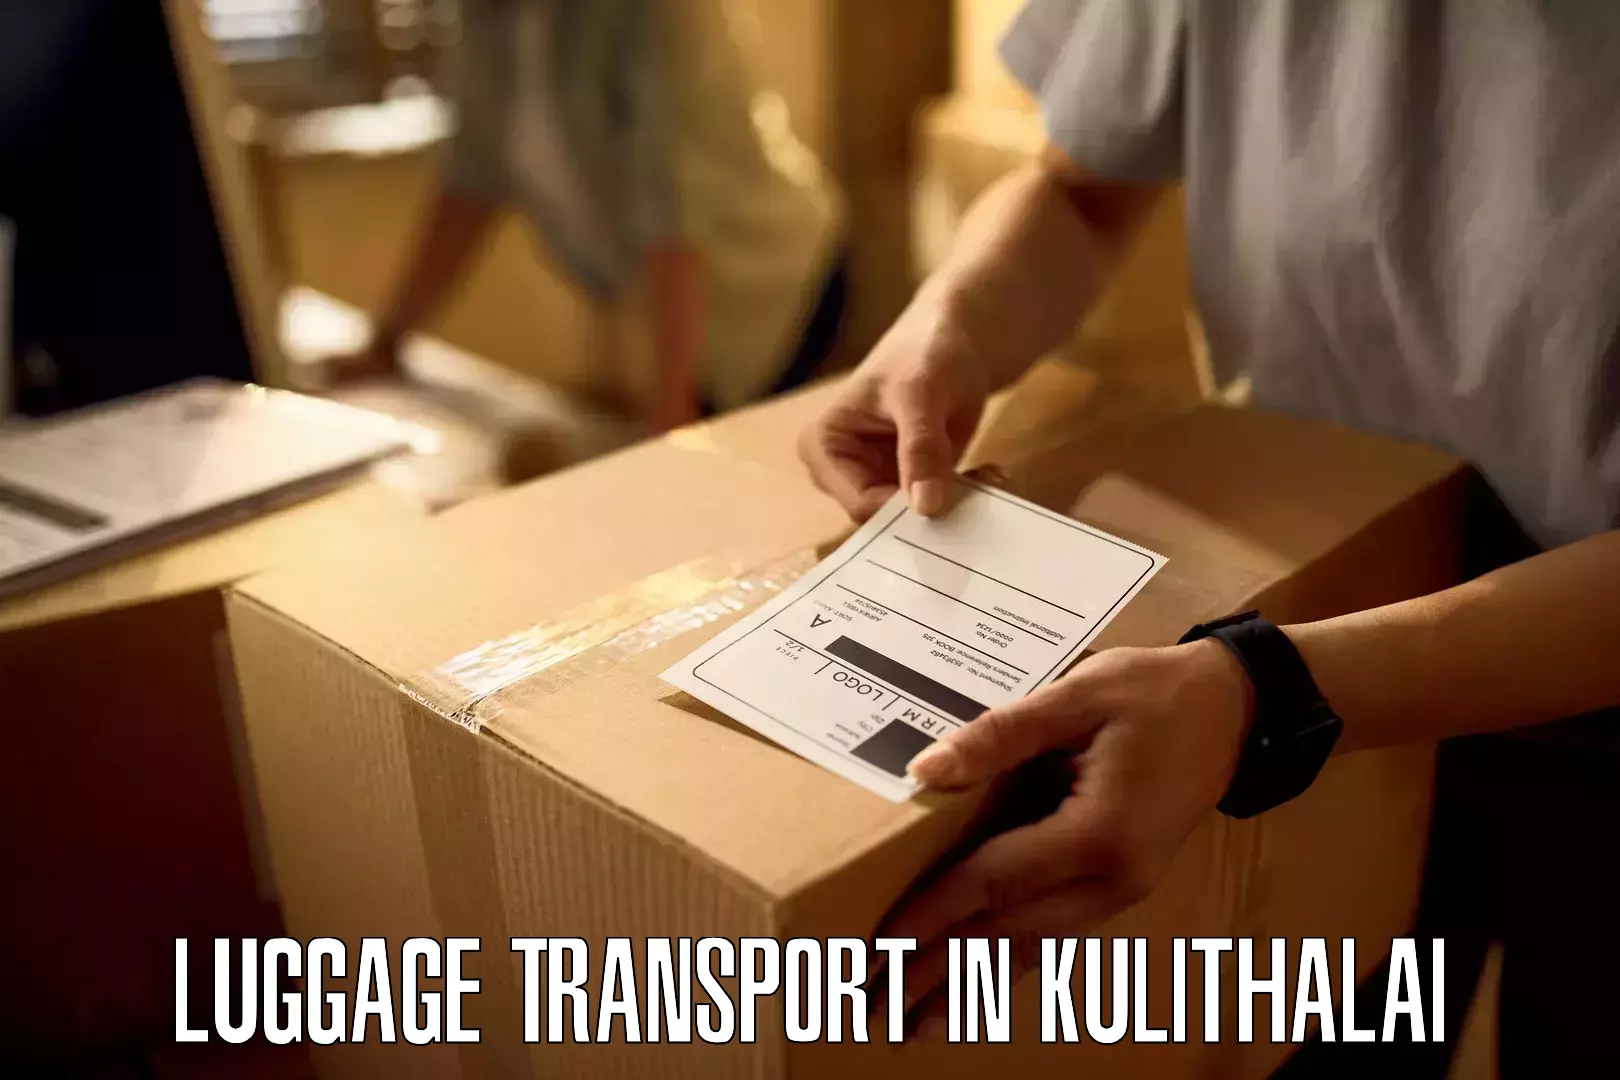 Luggage shipping planner in Kulithalai